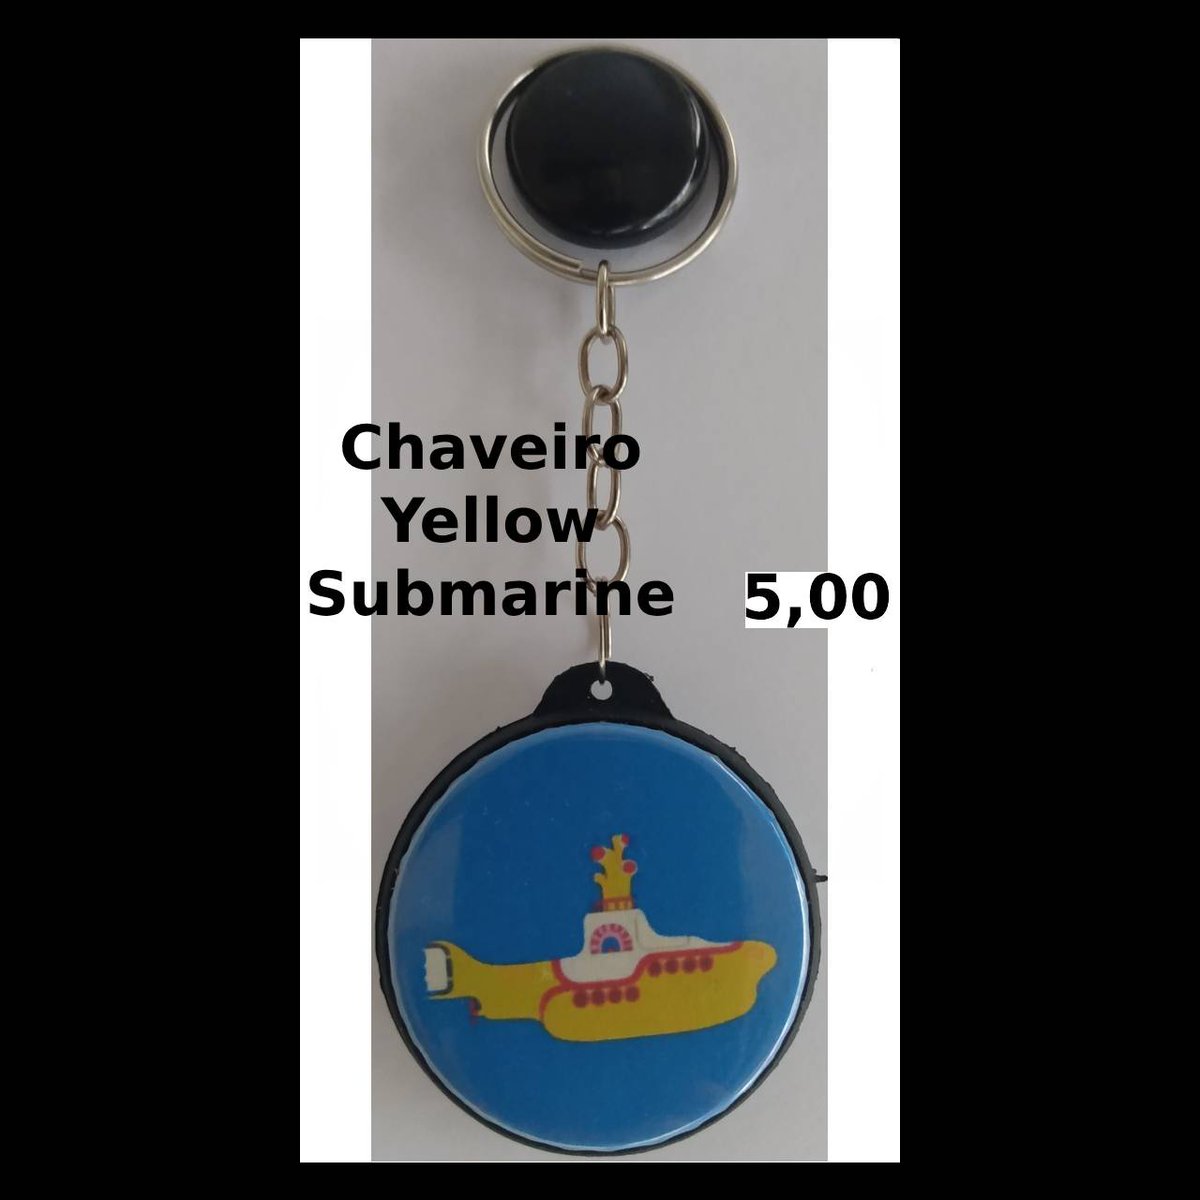 Chaveiro Yellow Sumarine 5,00. #YellowSubmarine #TheBeatles #album #musica #chaveiro